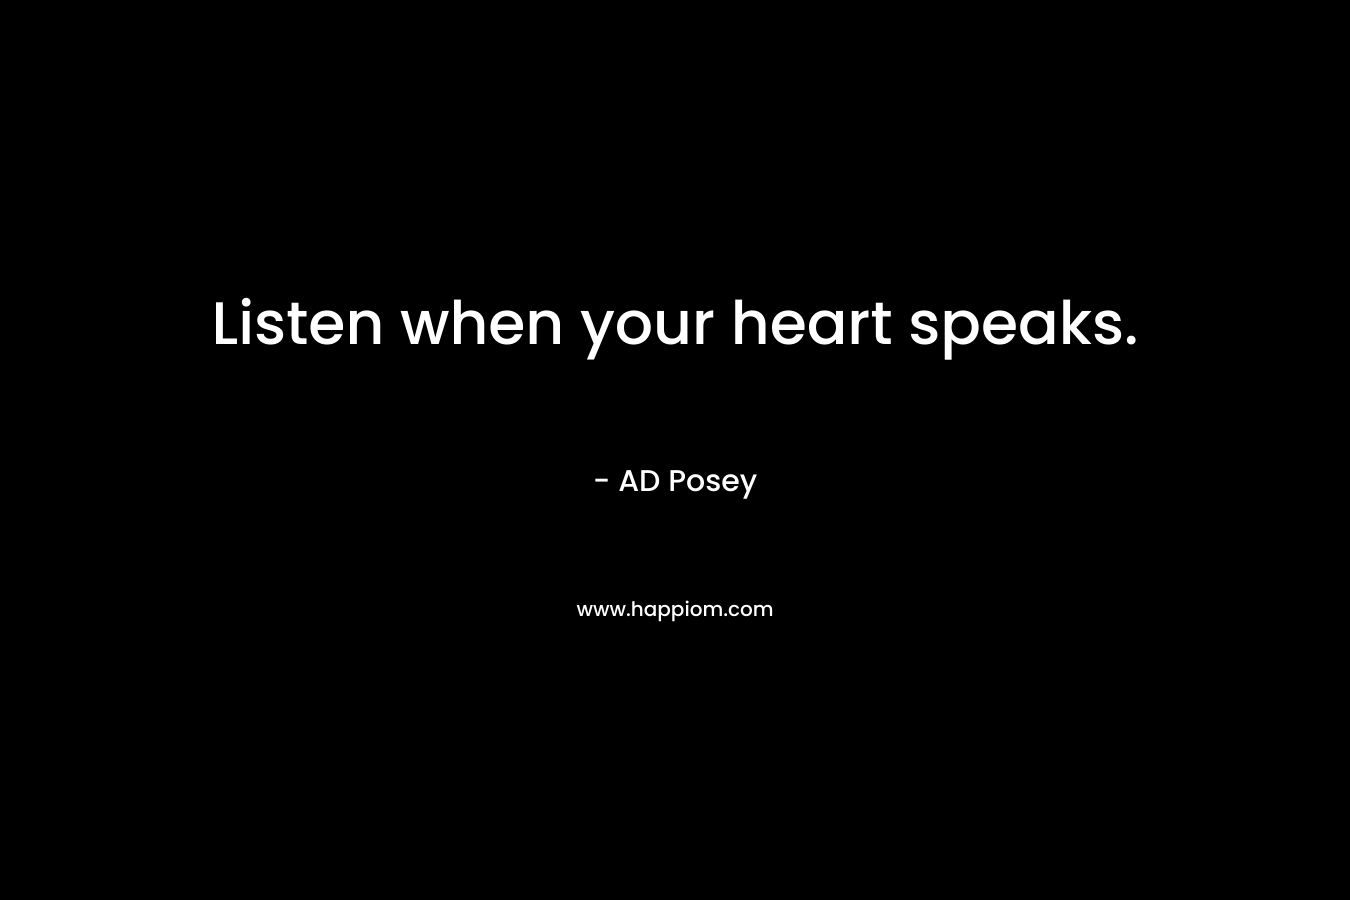 Listen when your heart speaks.